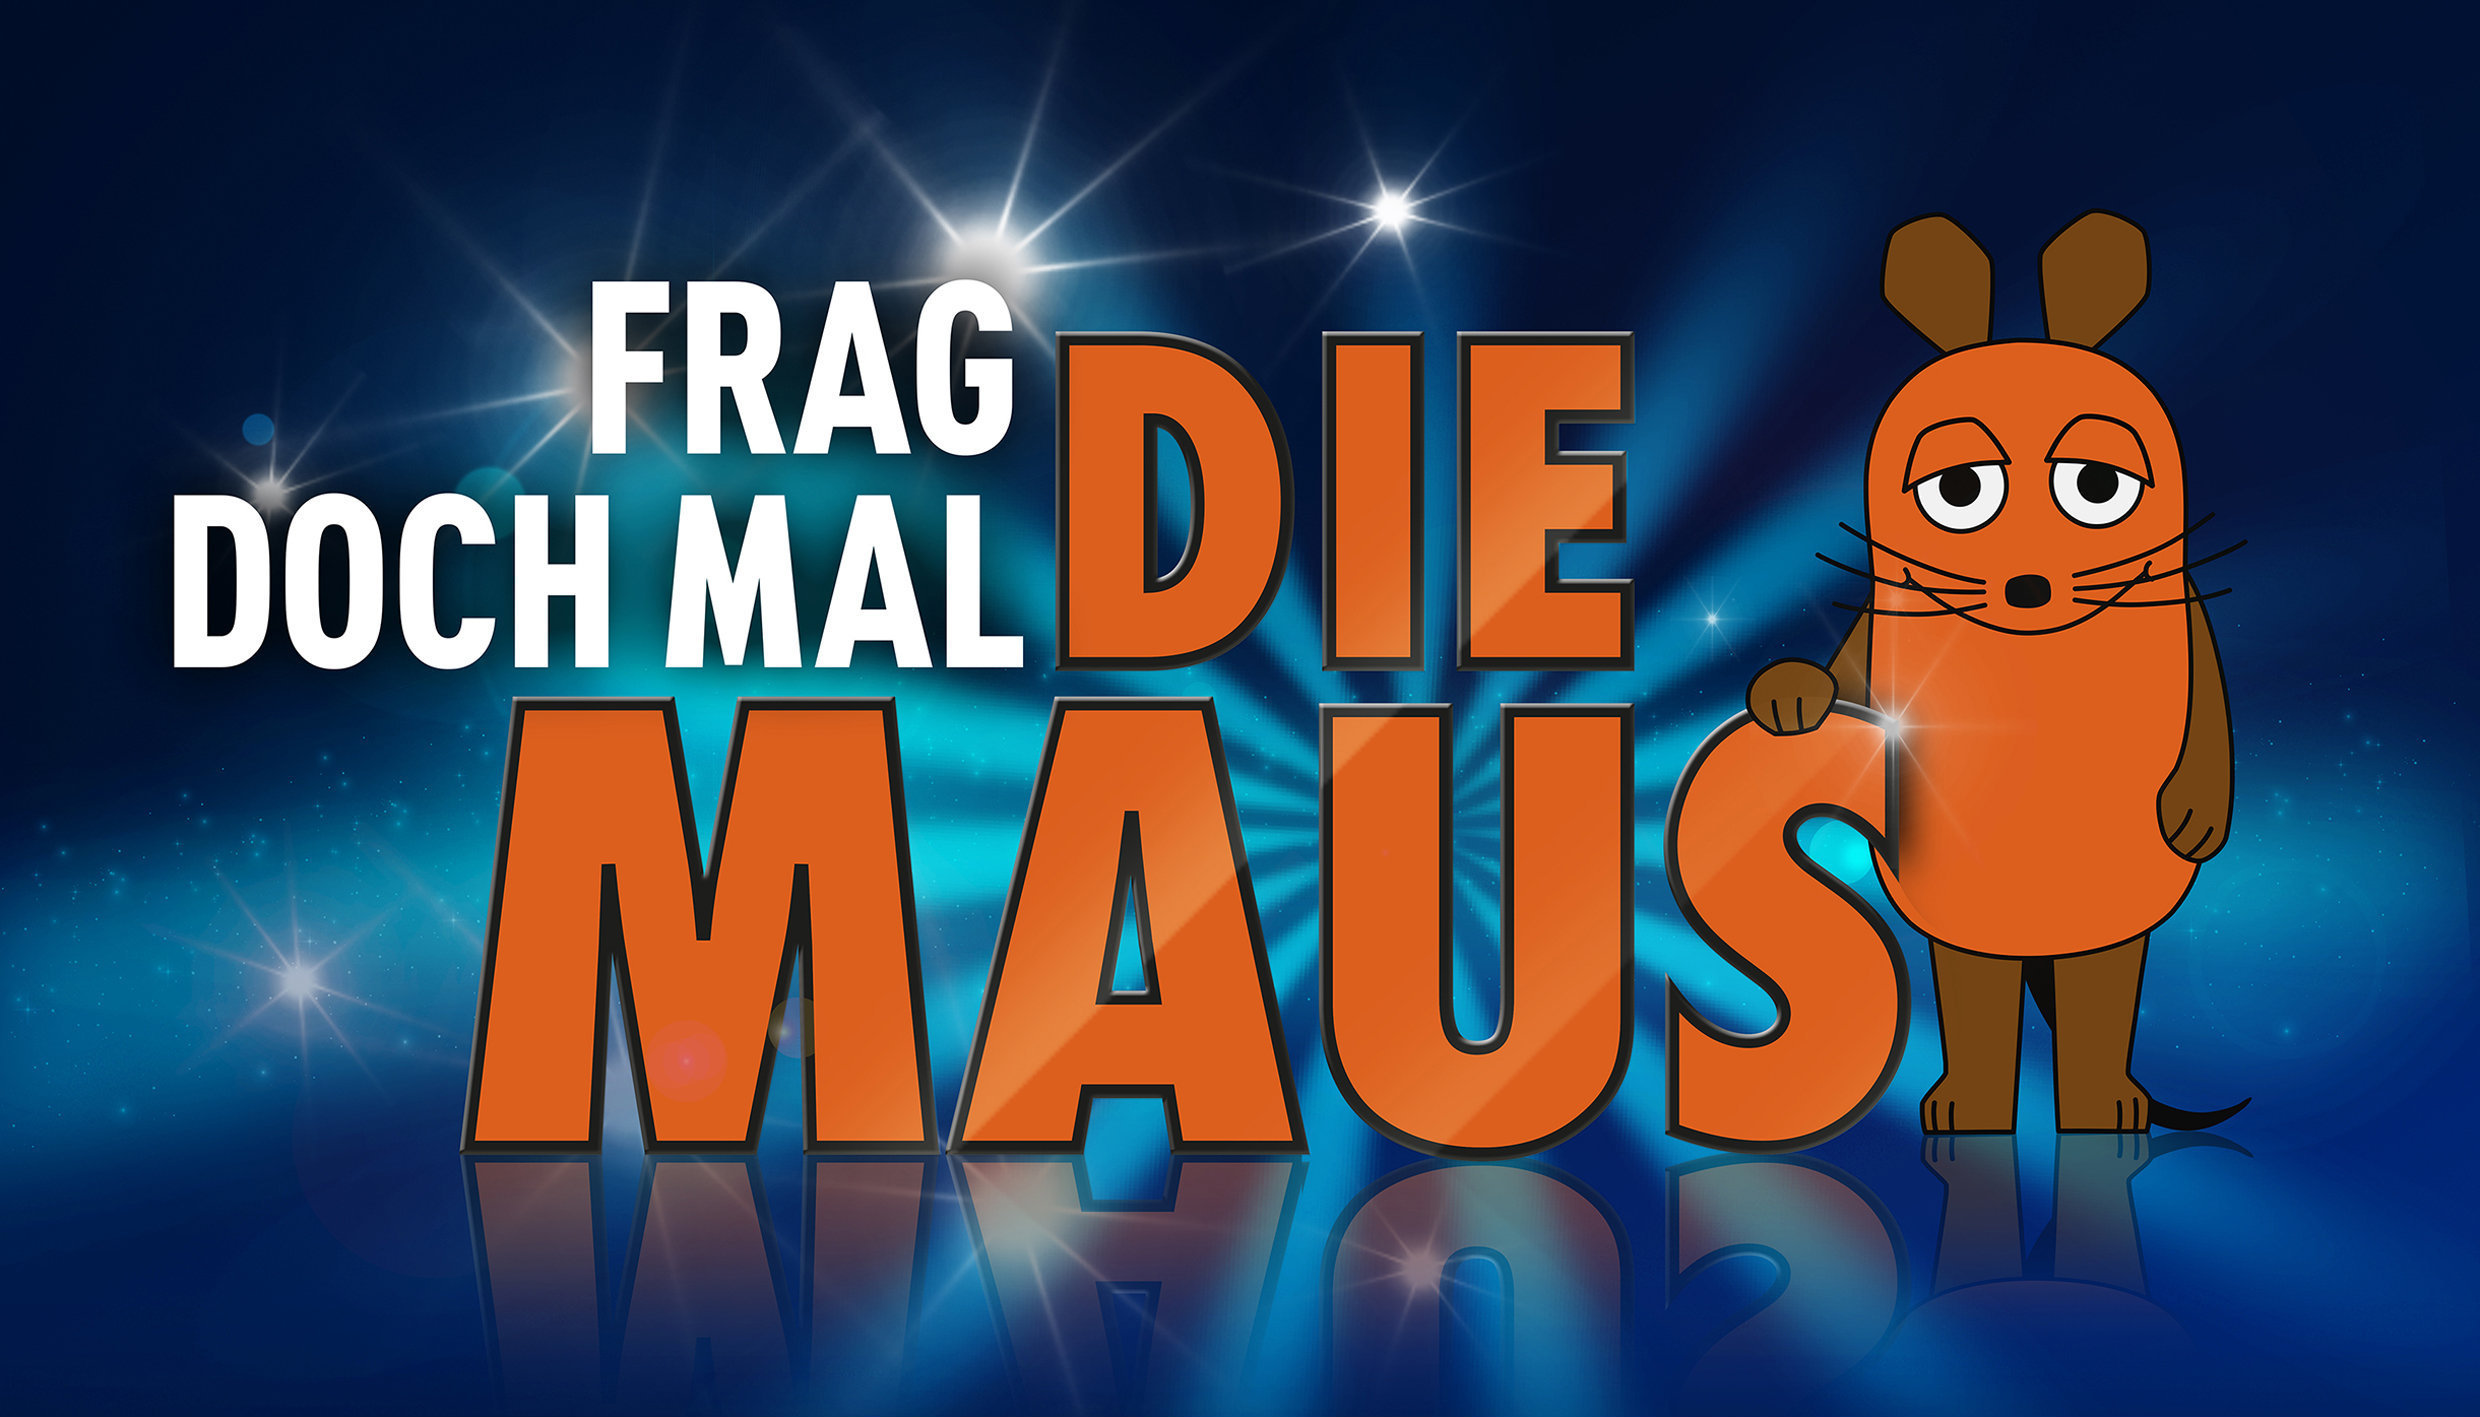 WDR 2 Frag doch mal die Maus: Woher hat das Martinshorn seinen